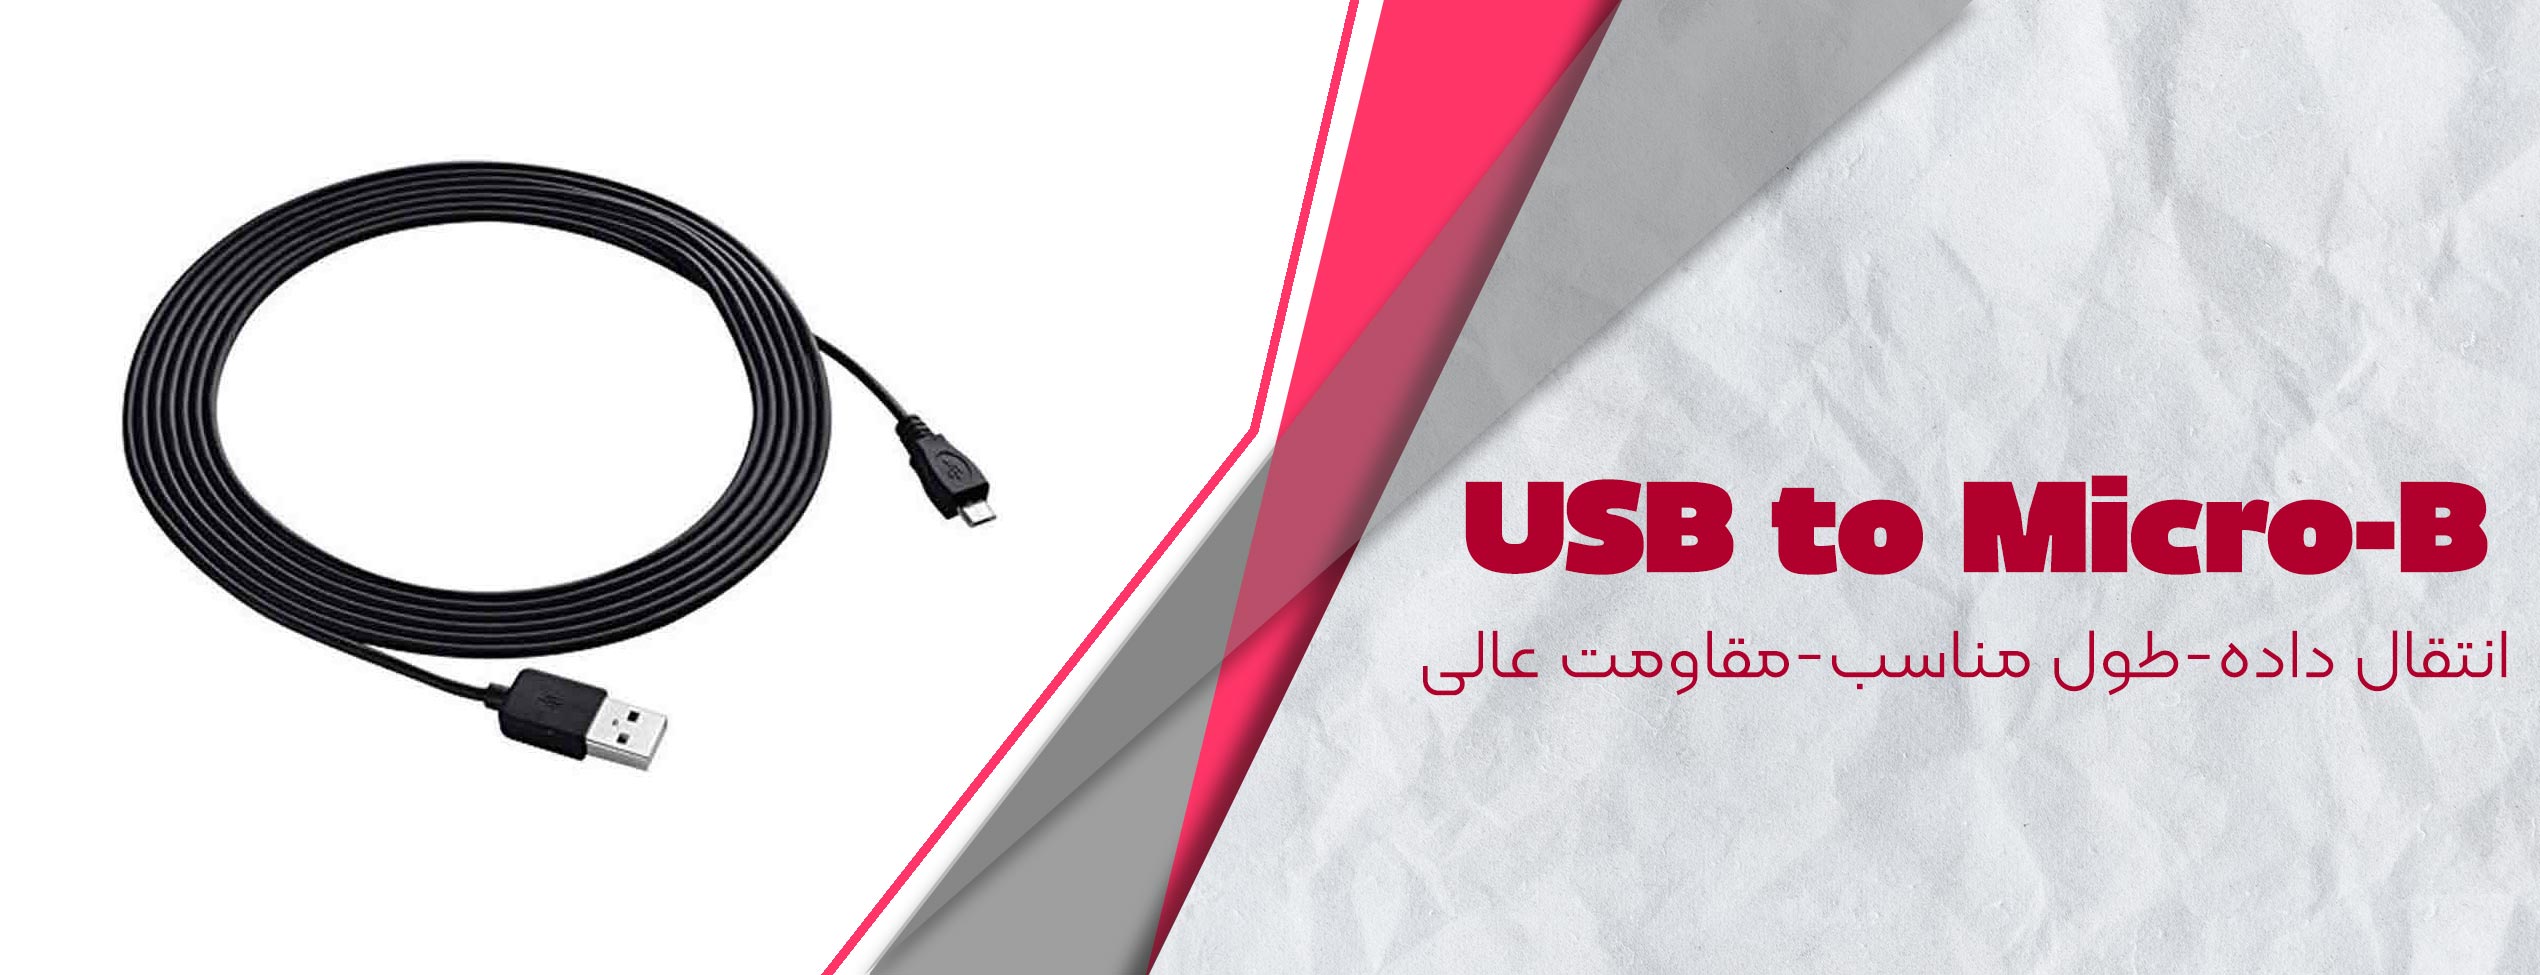 کابل تبدیل USB به Micro-B سونی PS4